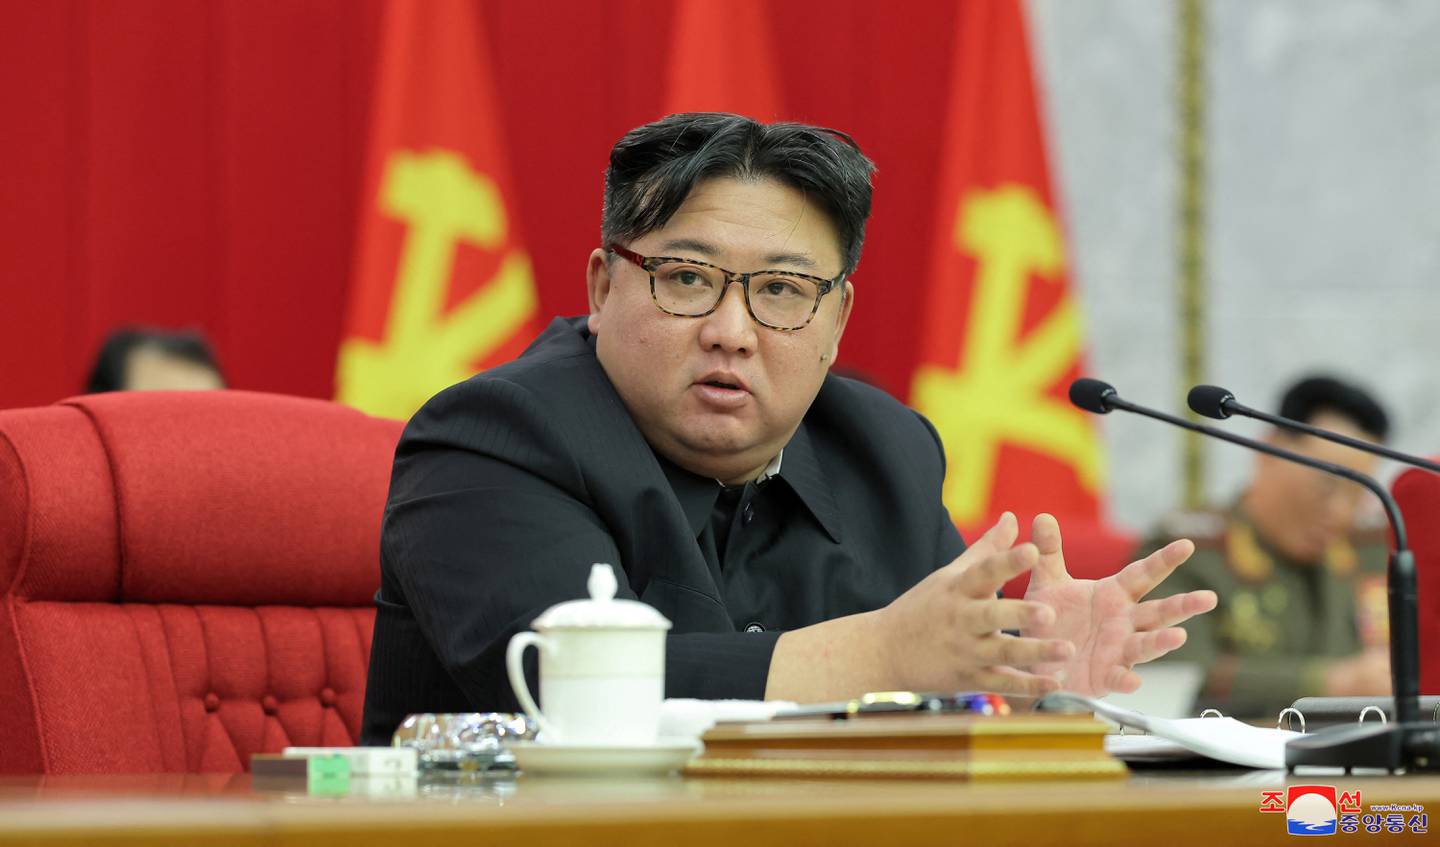 El líder norcoreano, Kim Jong-un, asiste a la 19ª reunión del buró político ampliado del 8º Comité Central del Partido de los Trabajadores de Corea, celebrada del 23 al 24 de enero, en Pionyang, Corea del Norte, en esta imagen difundida por la Agencia Central de Noticias de Corea el 25 de enero de 2024. KCNA vía REUTERS